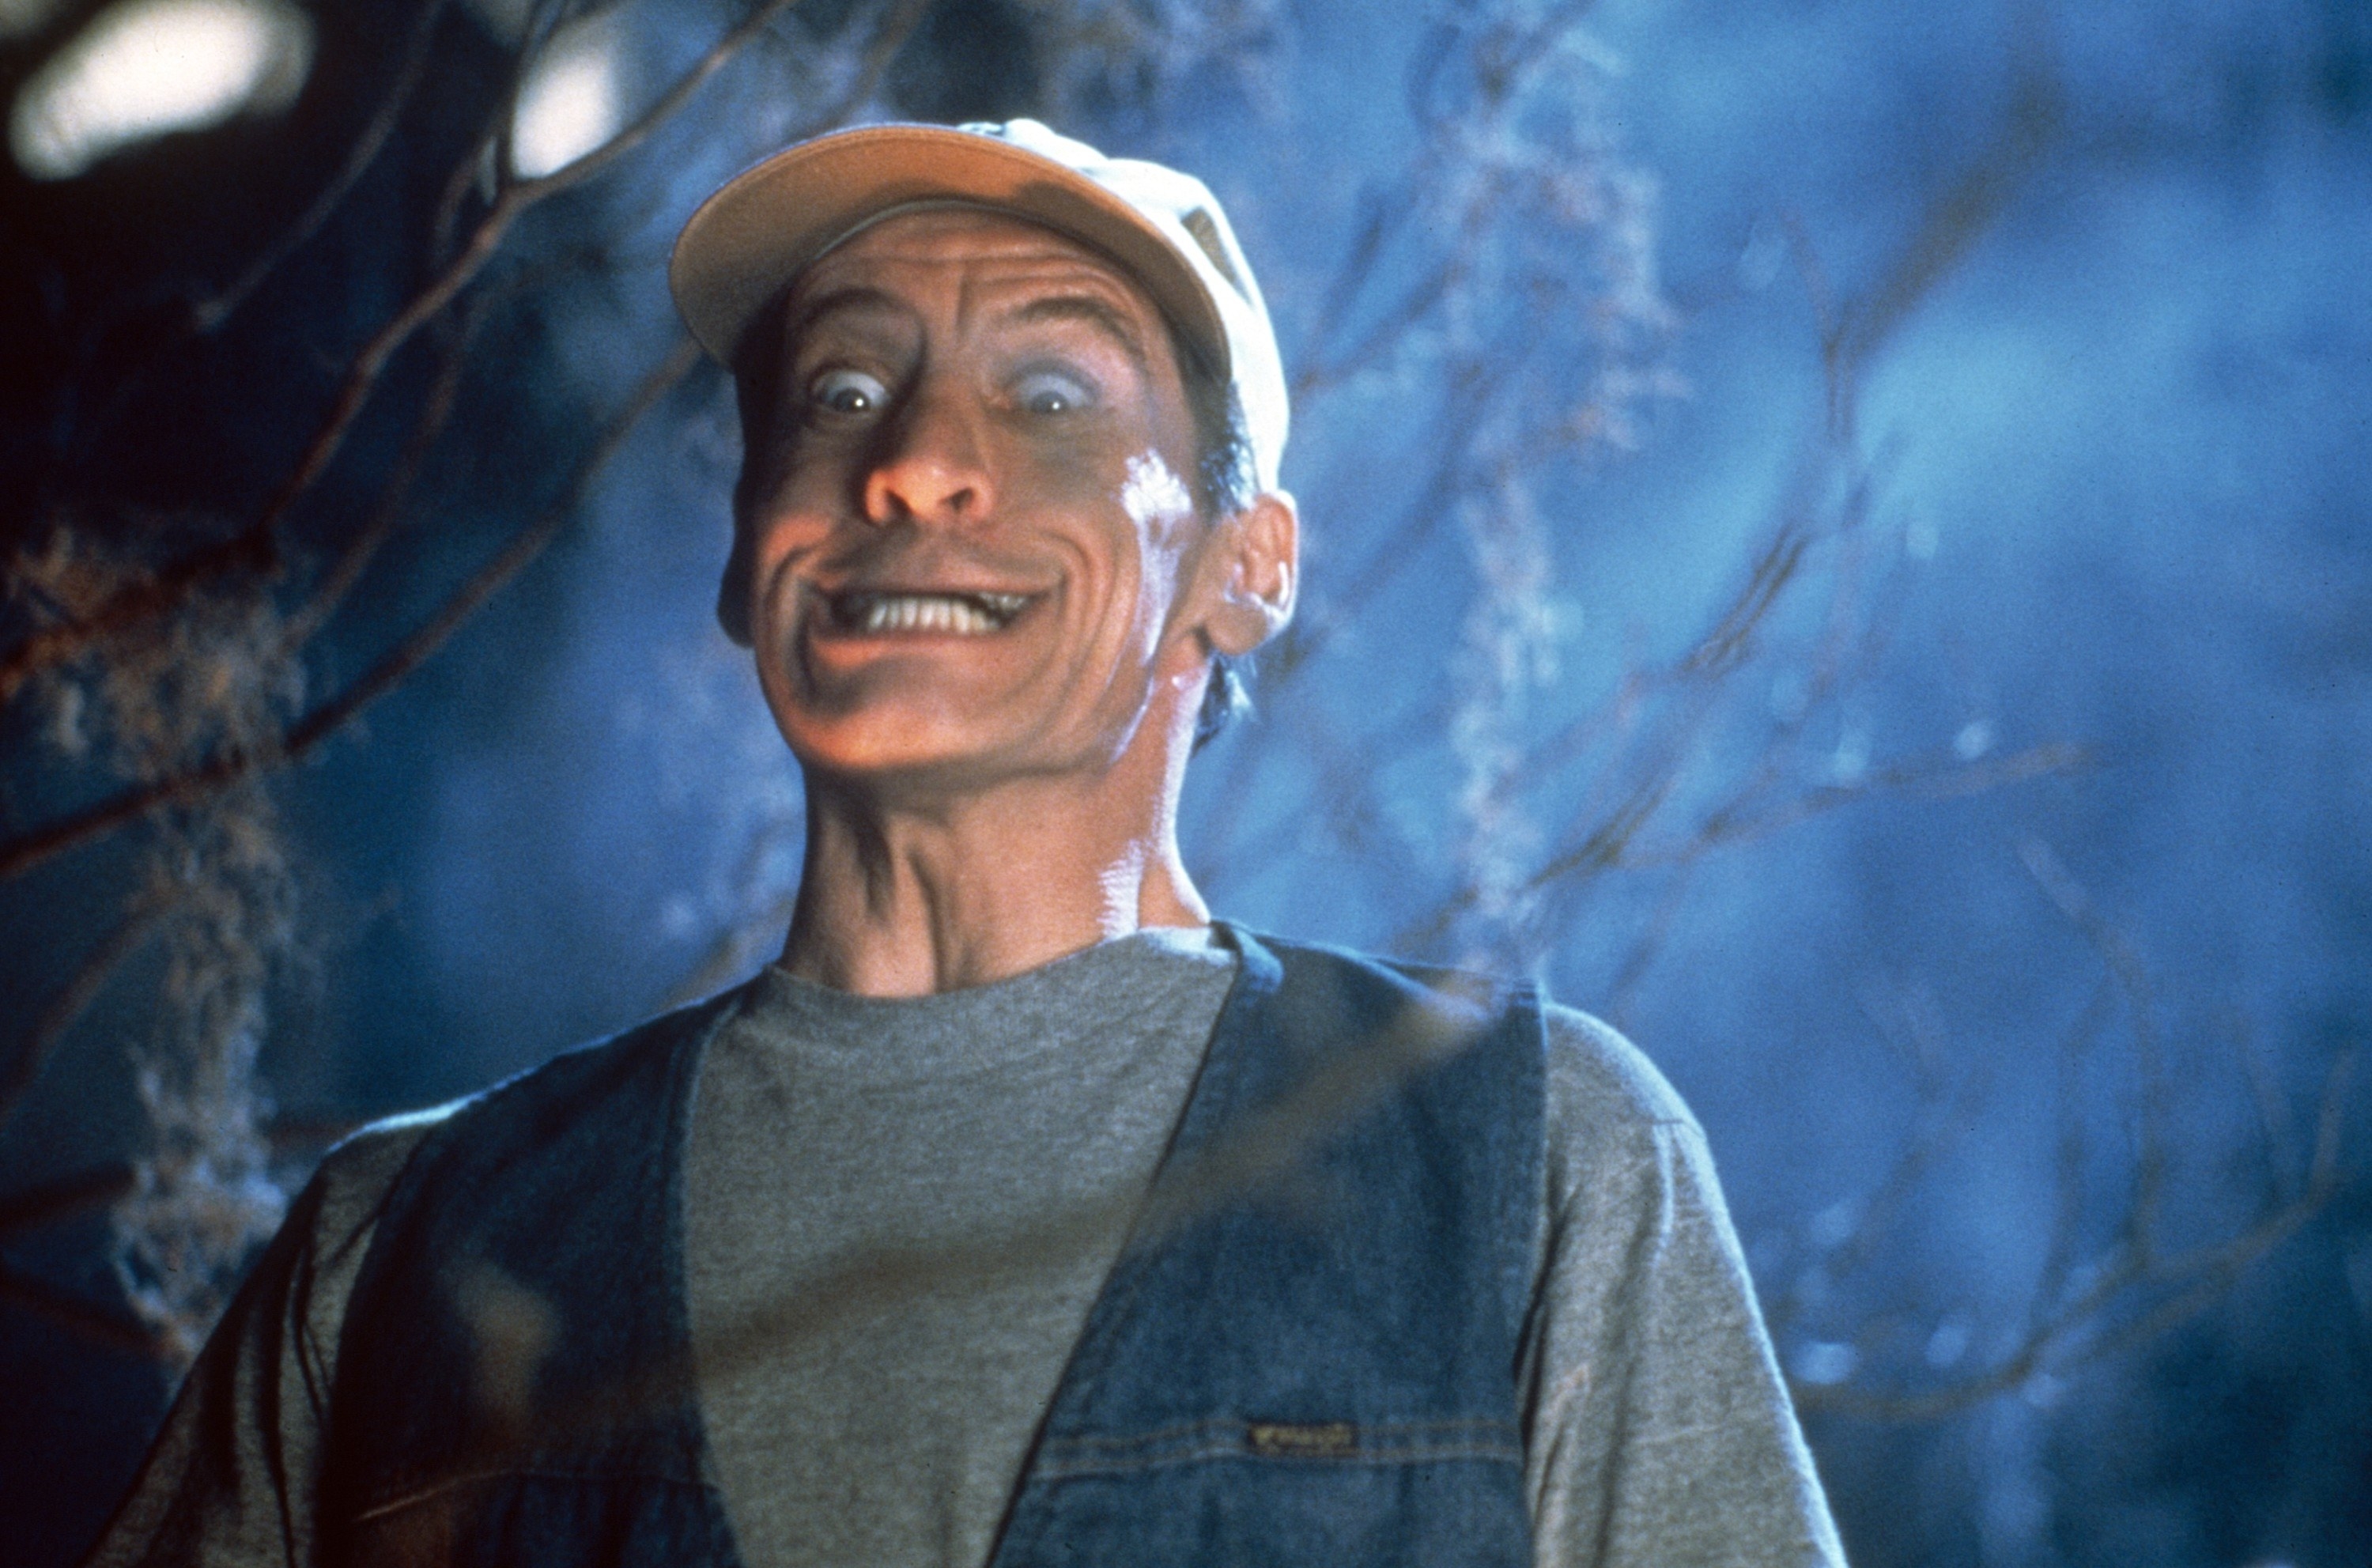 Jim Varney as Ernest